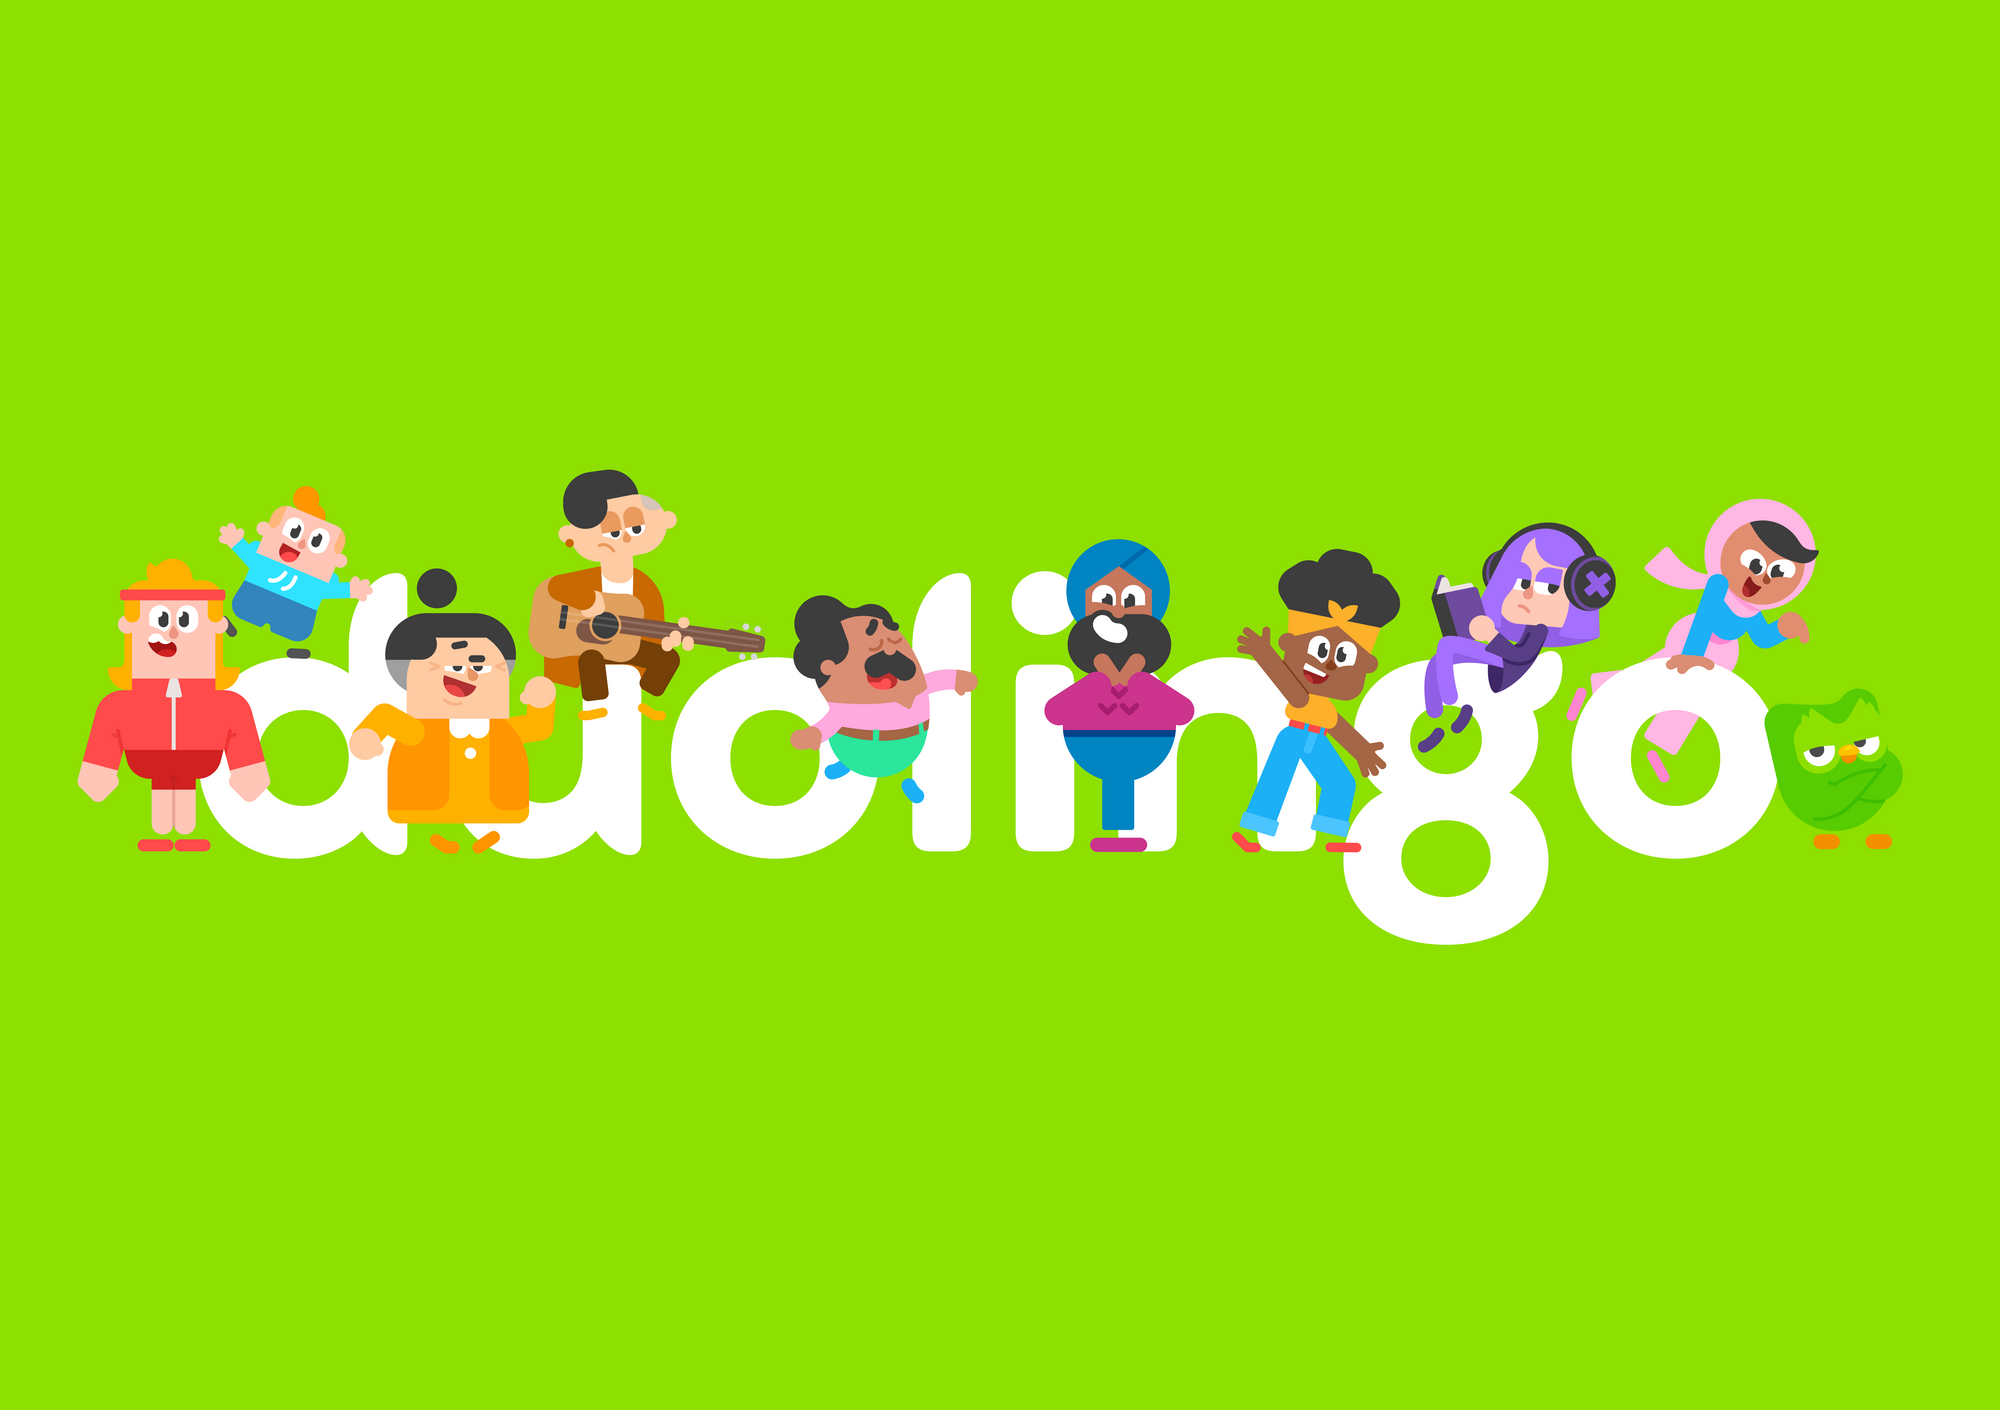 Duolingo là ứng dụng học tiếng Anh trên máy tính hoàn toàn miễn phí. (Ảnh: Sưu tầm Internet)